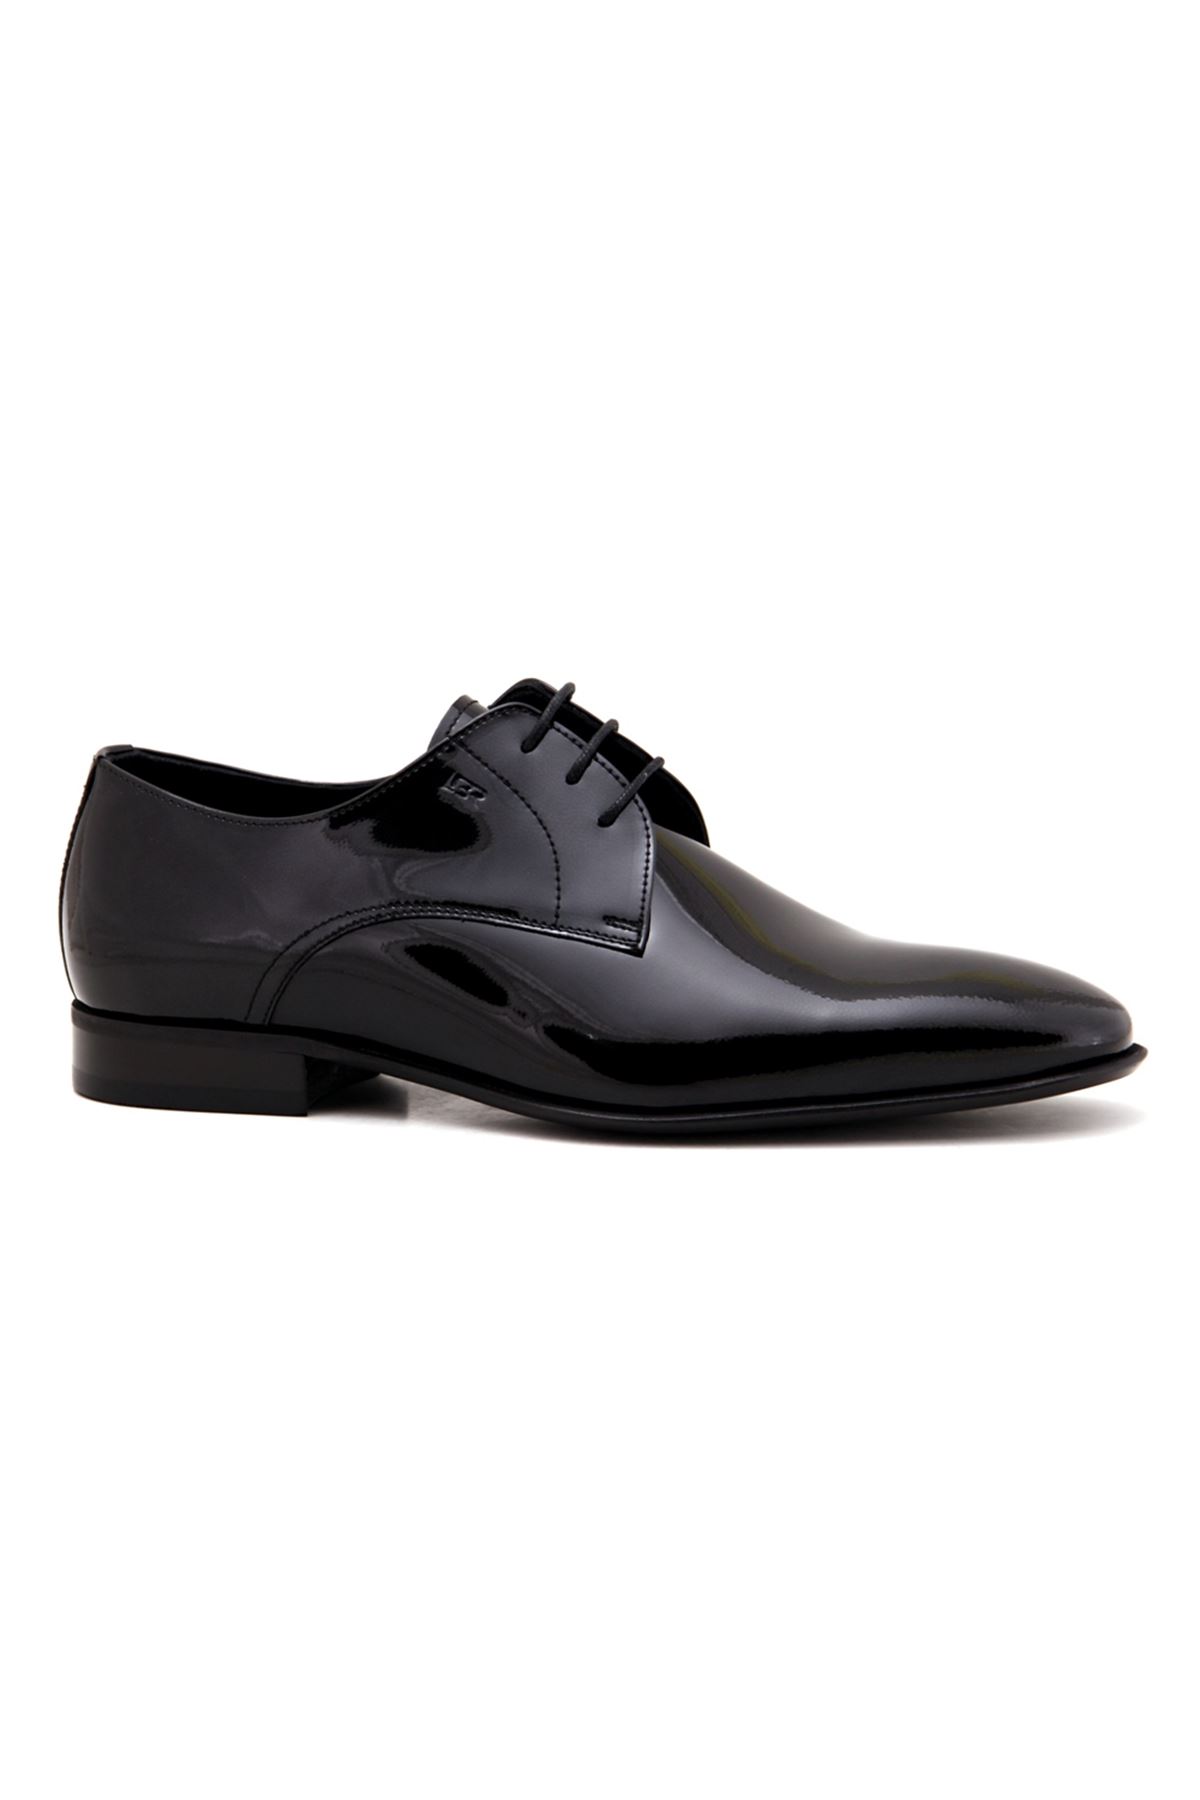 Libero 3744 Deri Klasik Erkek Ayakkabı - Siyah Rugan